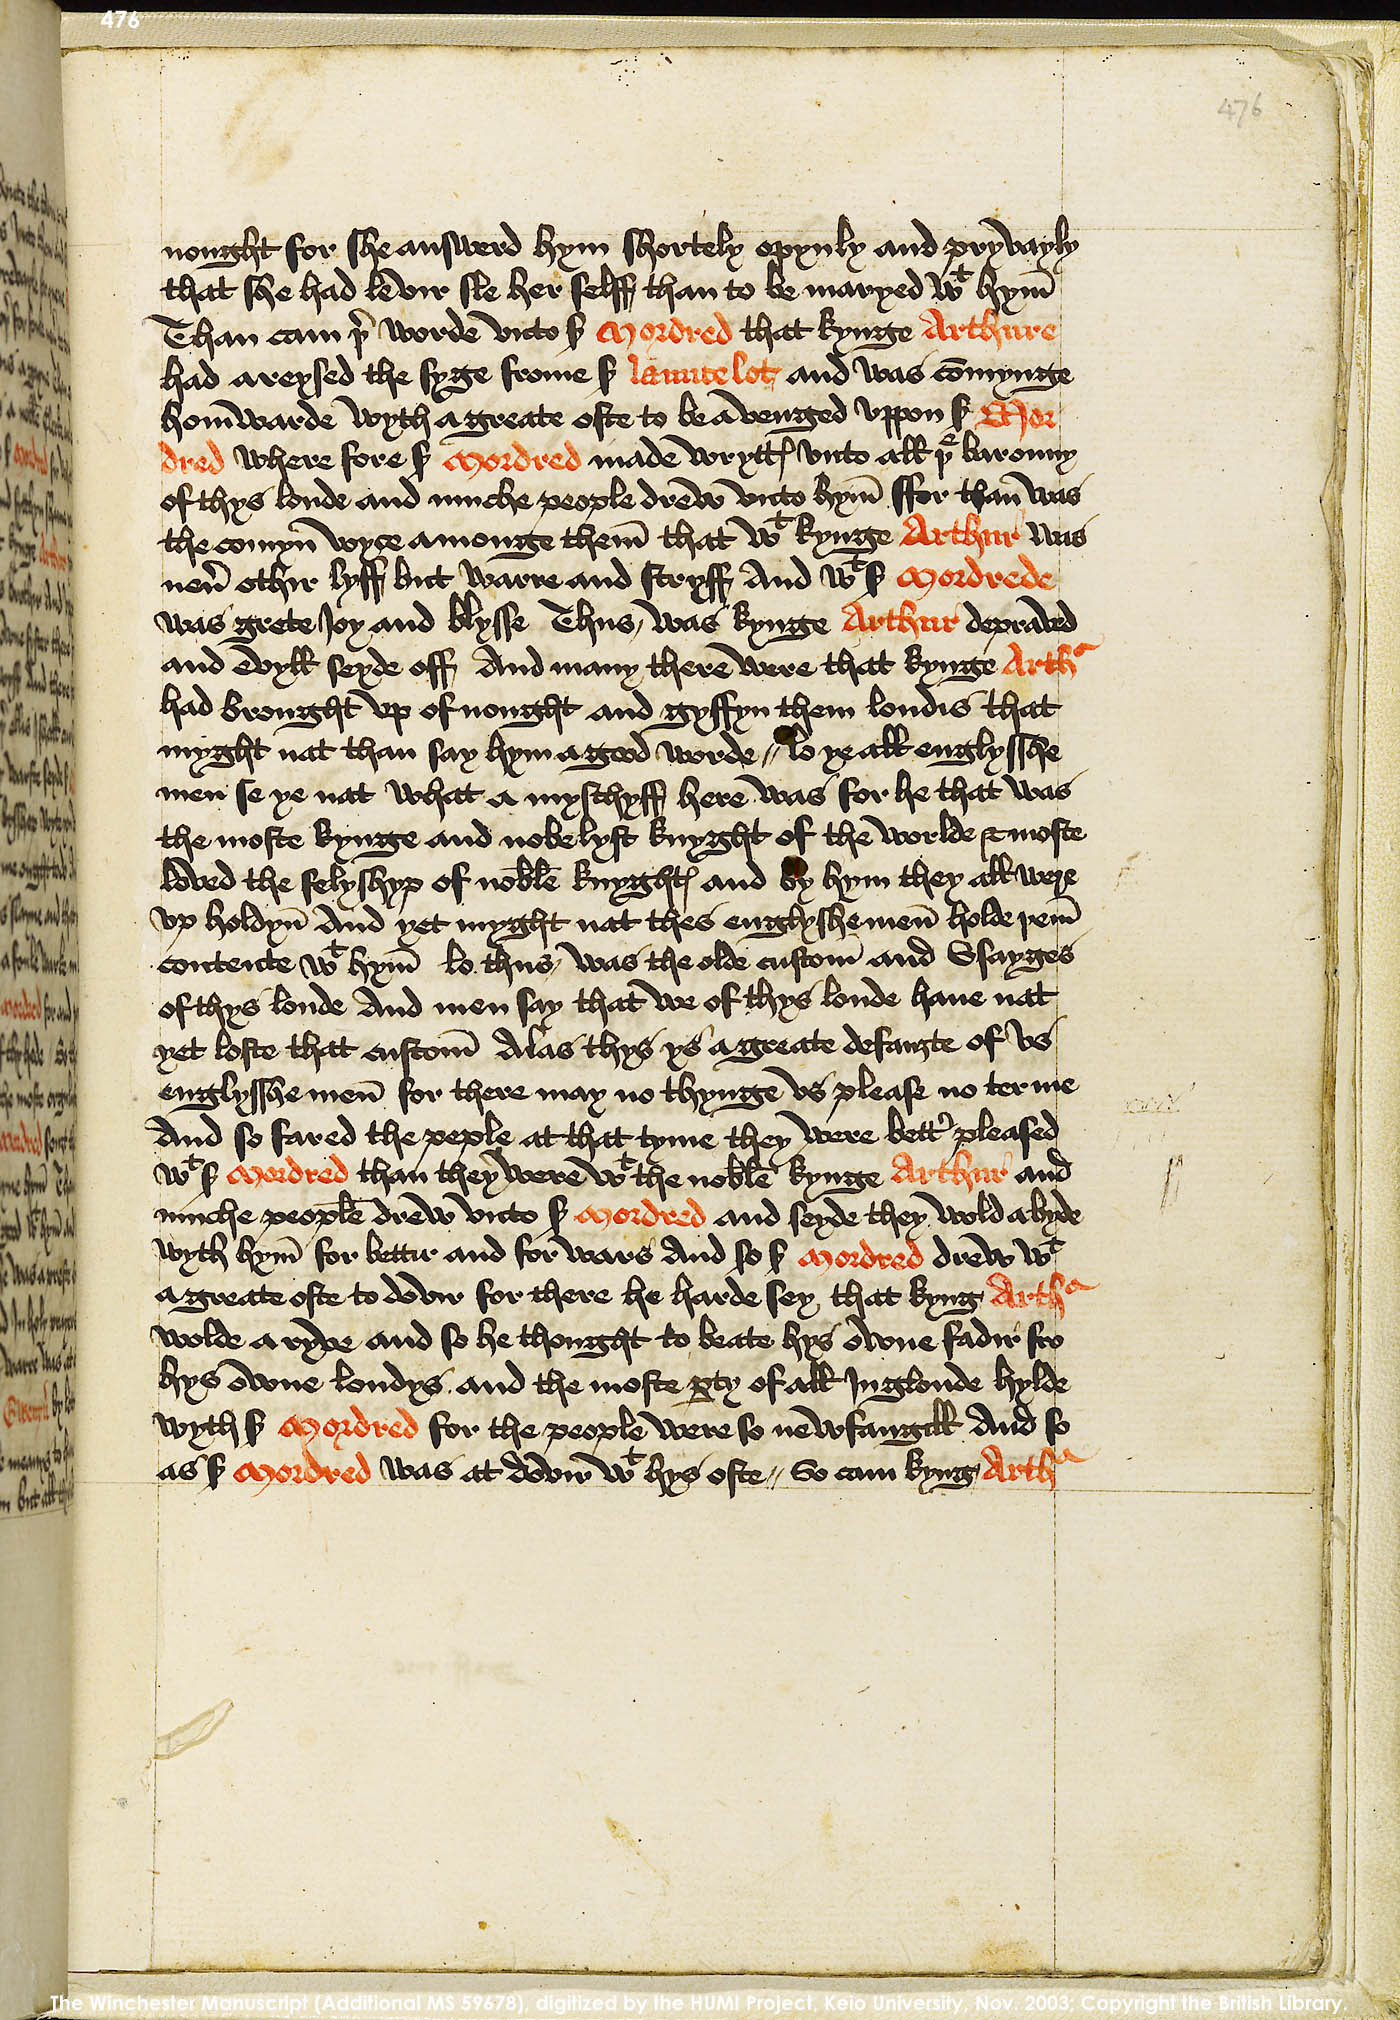 Folio 476r